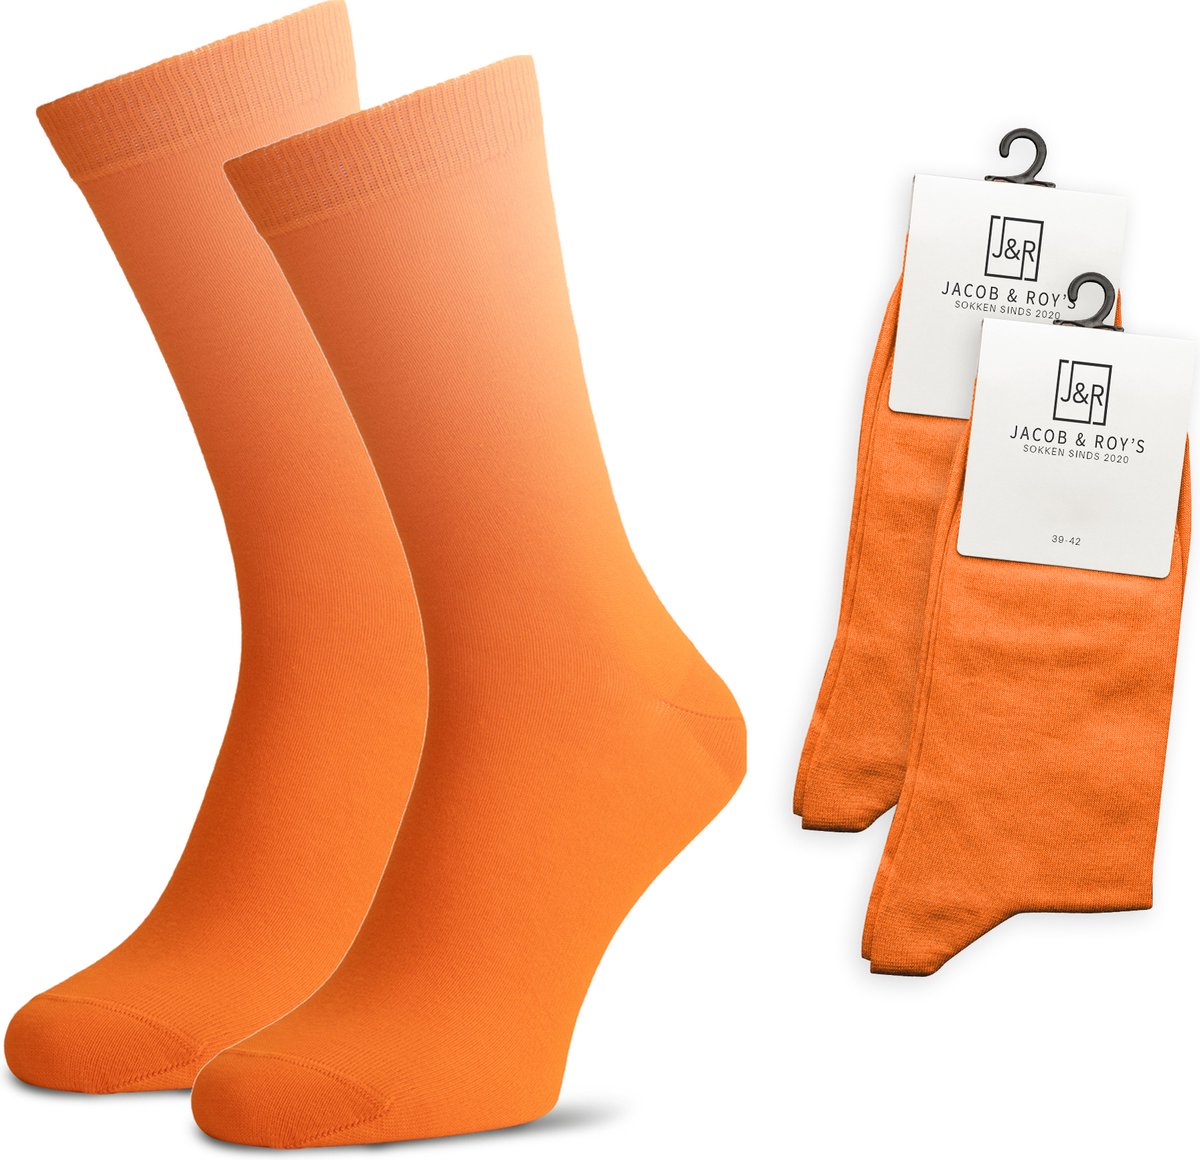 Jacob & Roy's 2 Paar Oranje Sokken - Kousen - Heren & Dames - Leuke Sokken - Vrolijke Sokken - Grappige Sokken - Katoen - Maat 39-42 - Funny Socks - Gekleurde Sokken Waar Je Happy Van Wordt